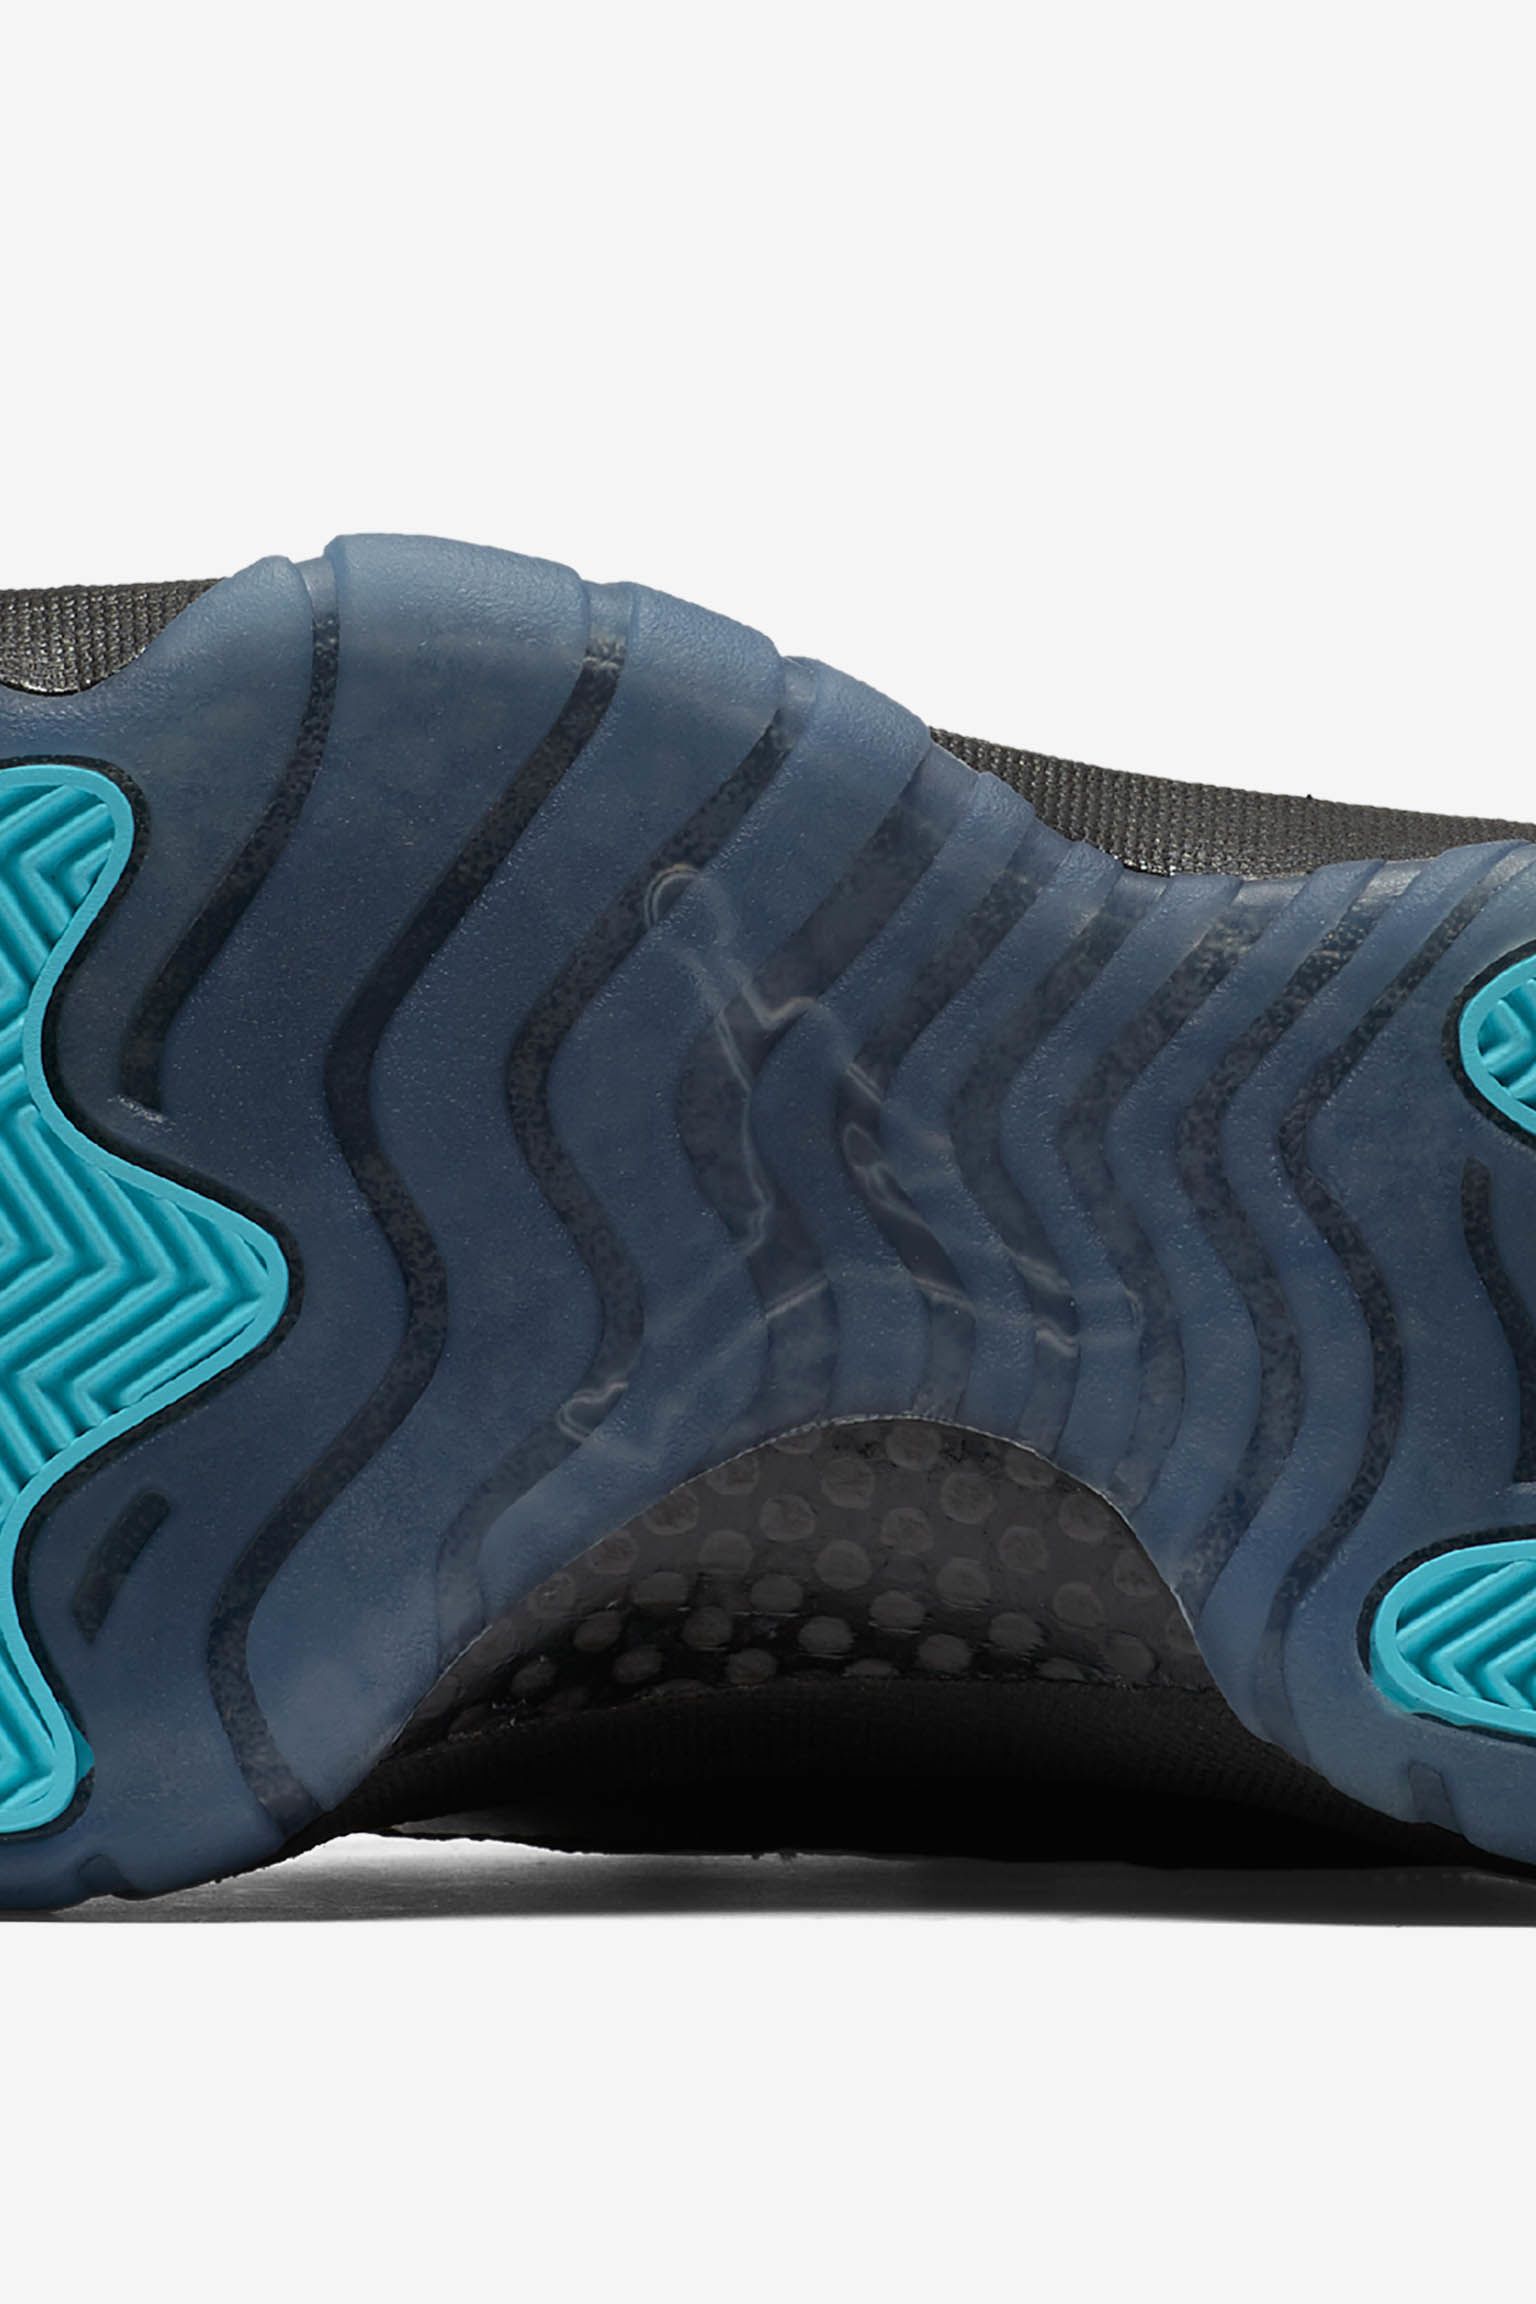 Air Jordan 11 Retro Gamma Release Date Nike Snkrs